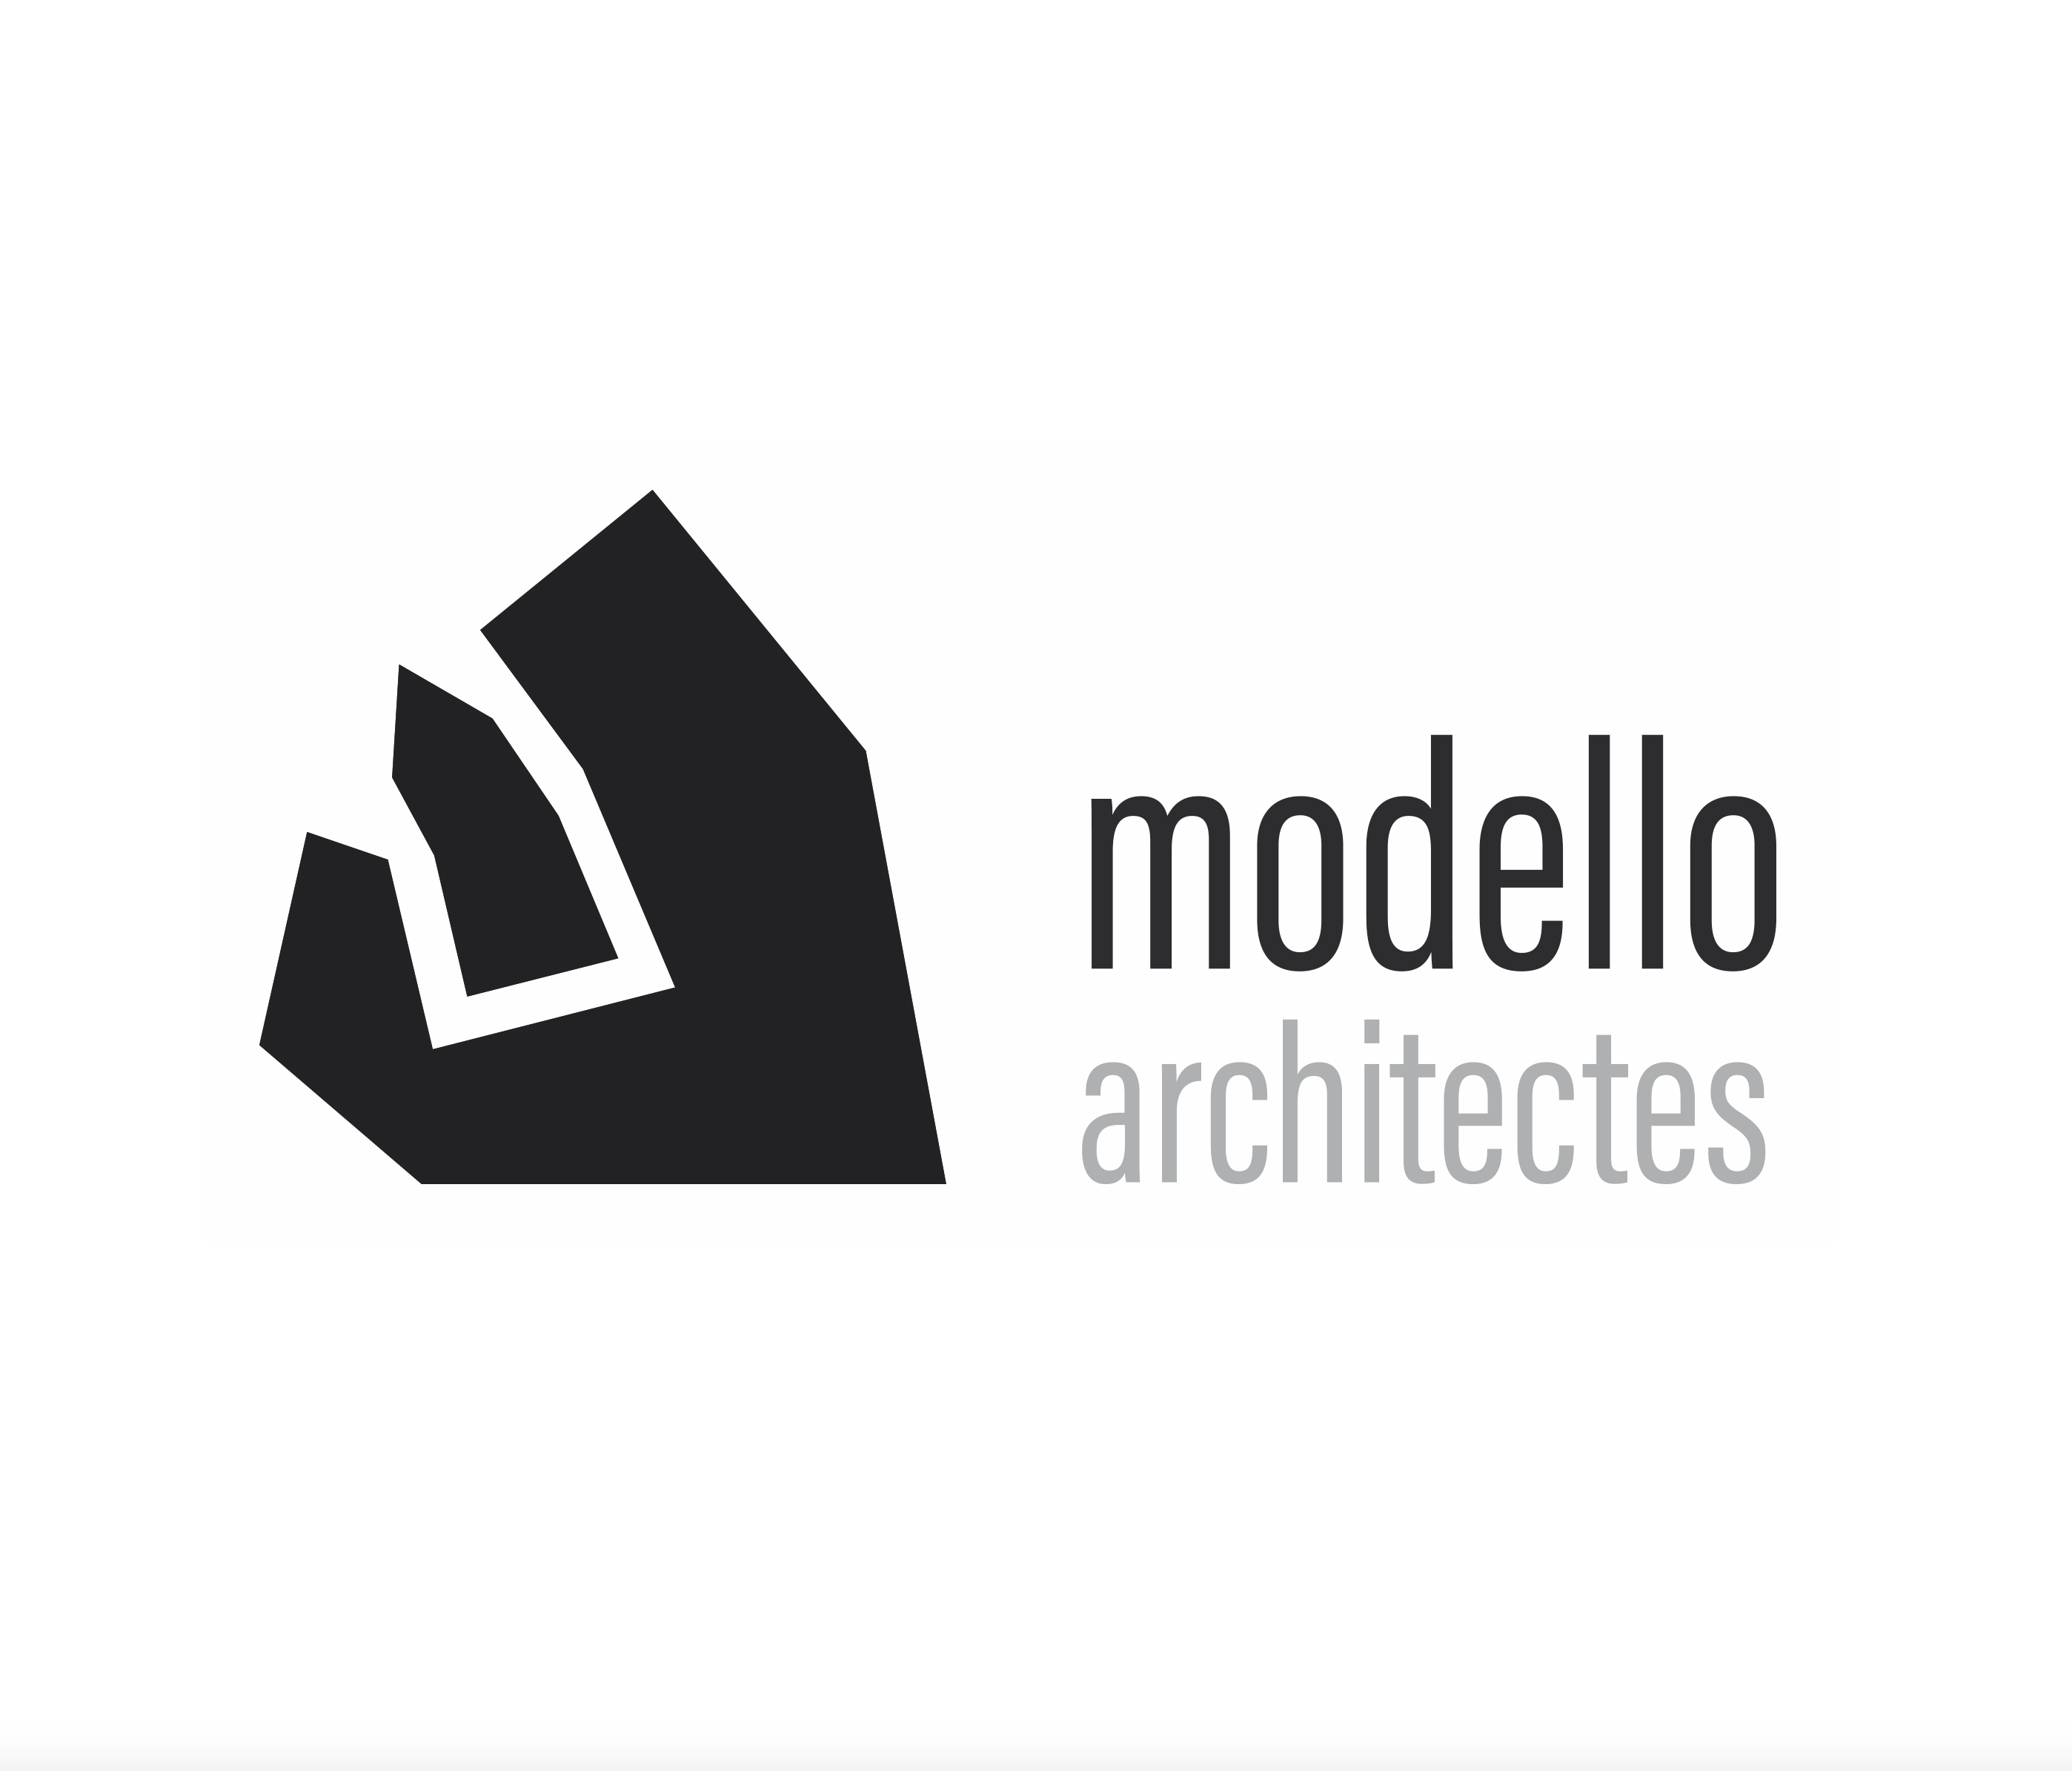 Modello architectes